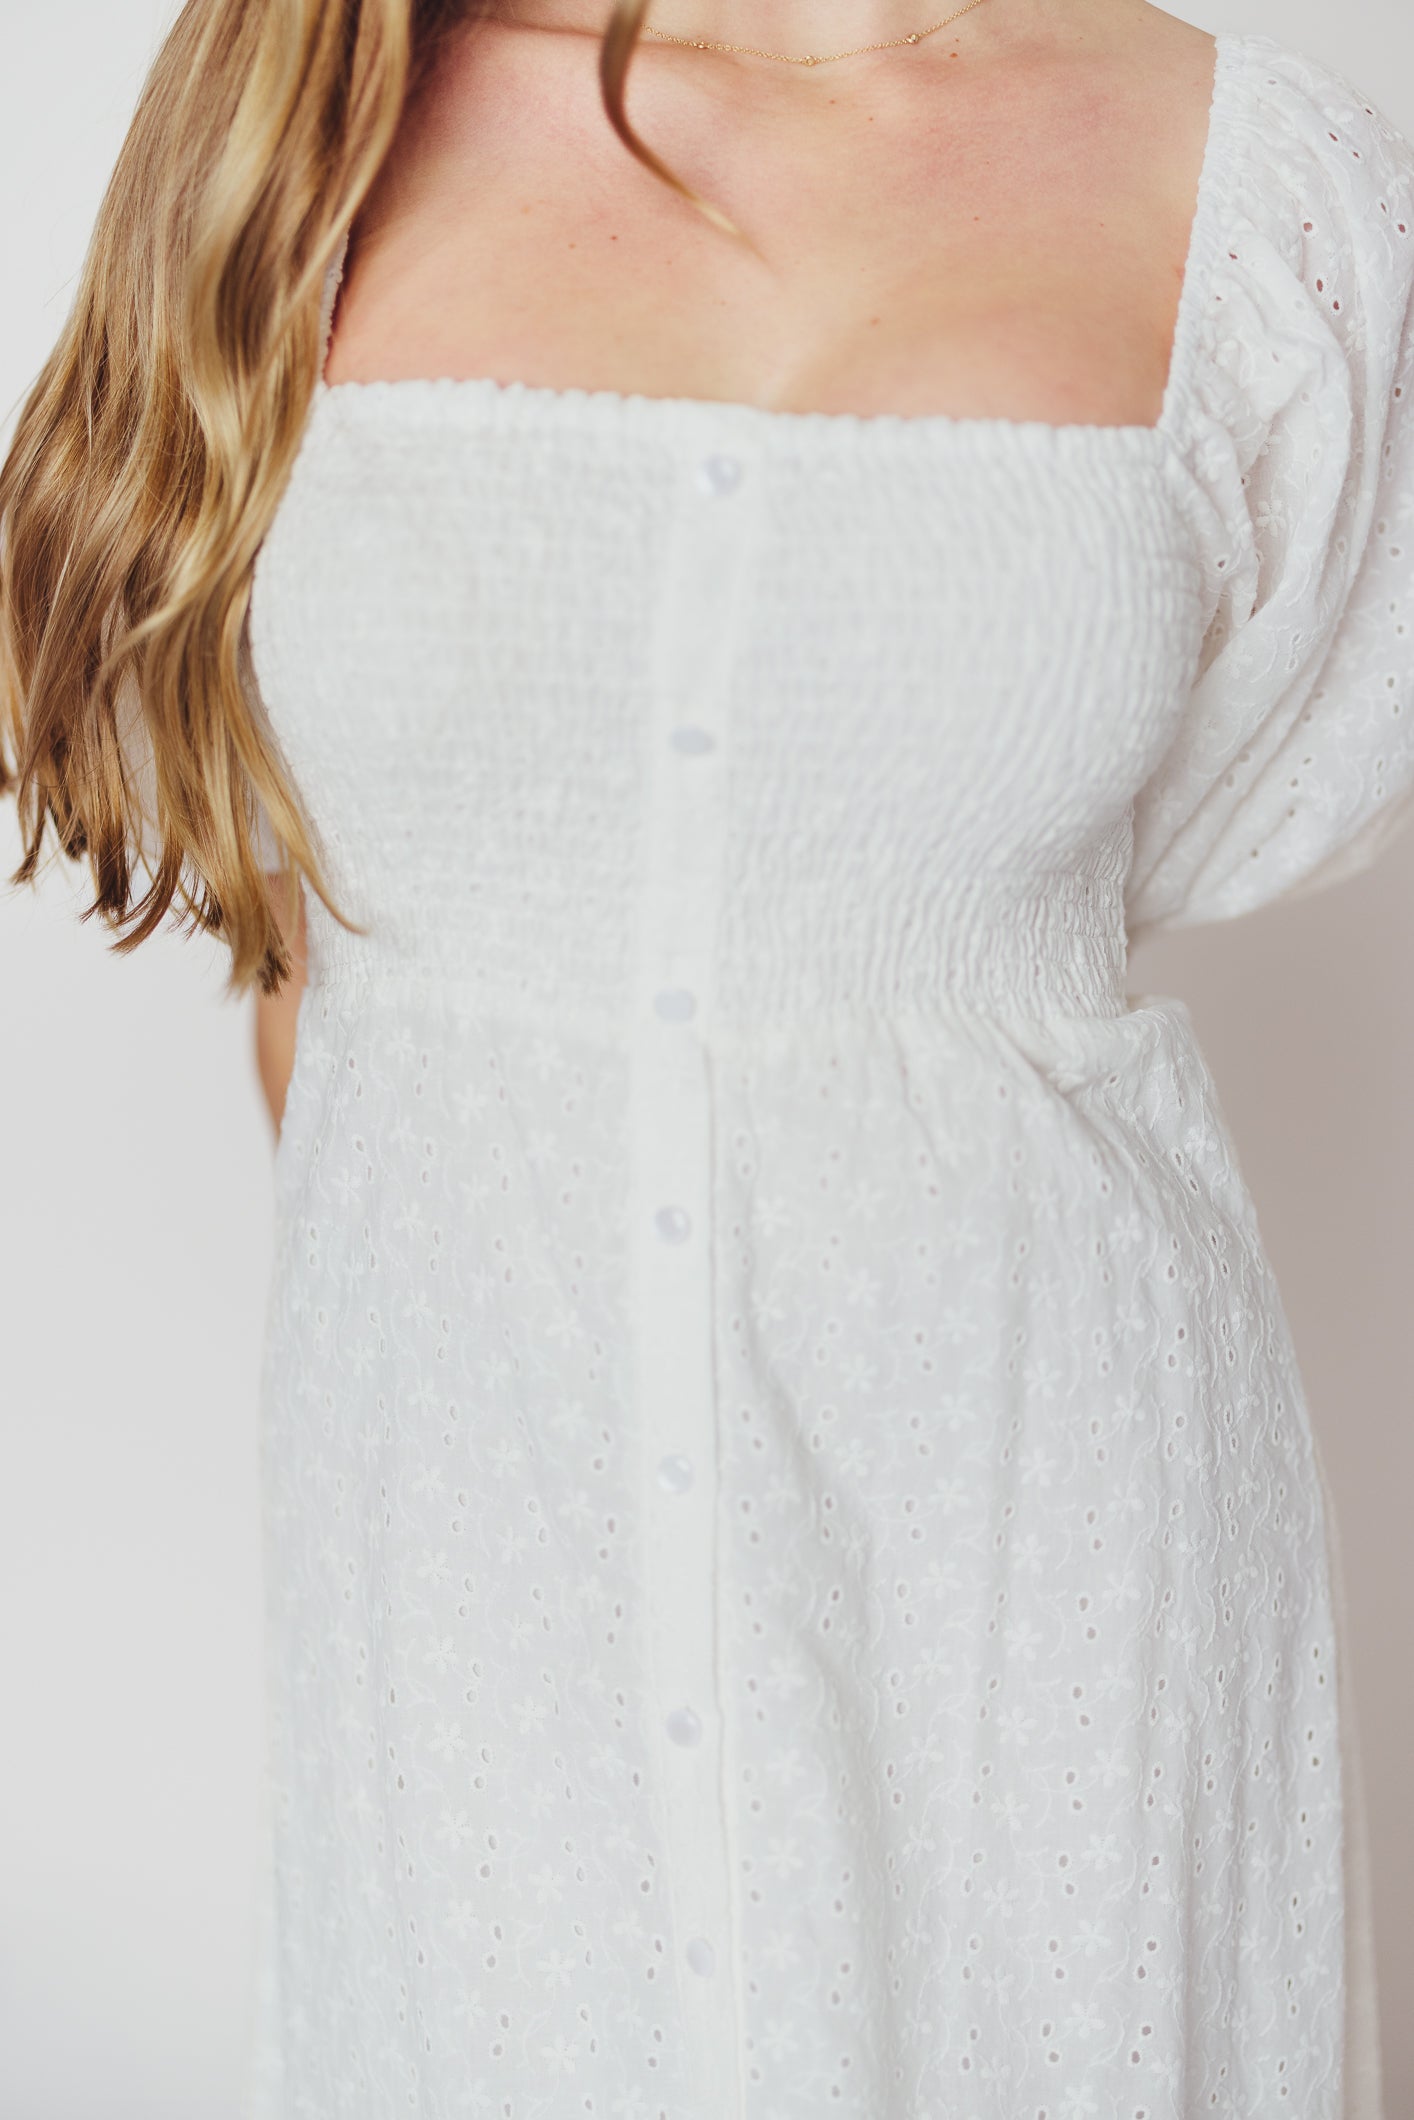 Whitney 100% Cotton Eyelet Maxi Dress in White - Nursing Friendly